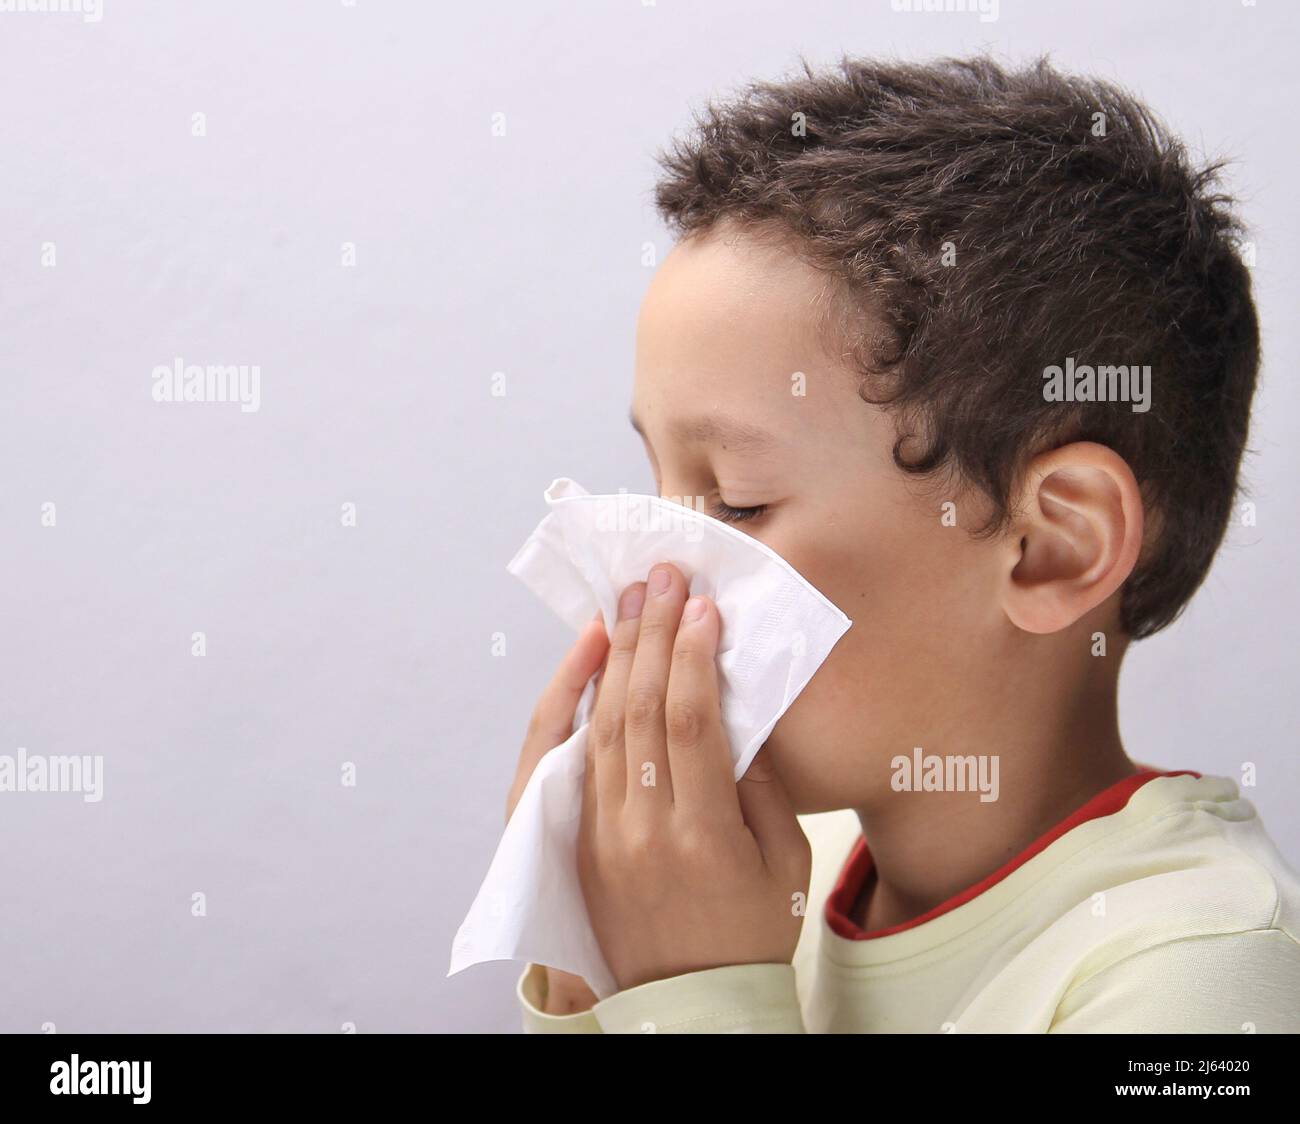 Fangen der Grippe Kind Nase bläst nach einer Erkältung mit grauem Hintergrund mit Menschen Stock Foto Stockfoto